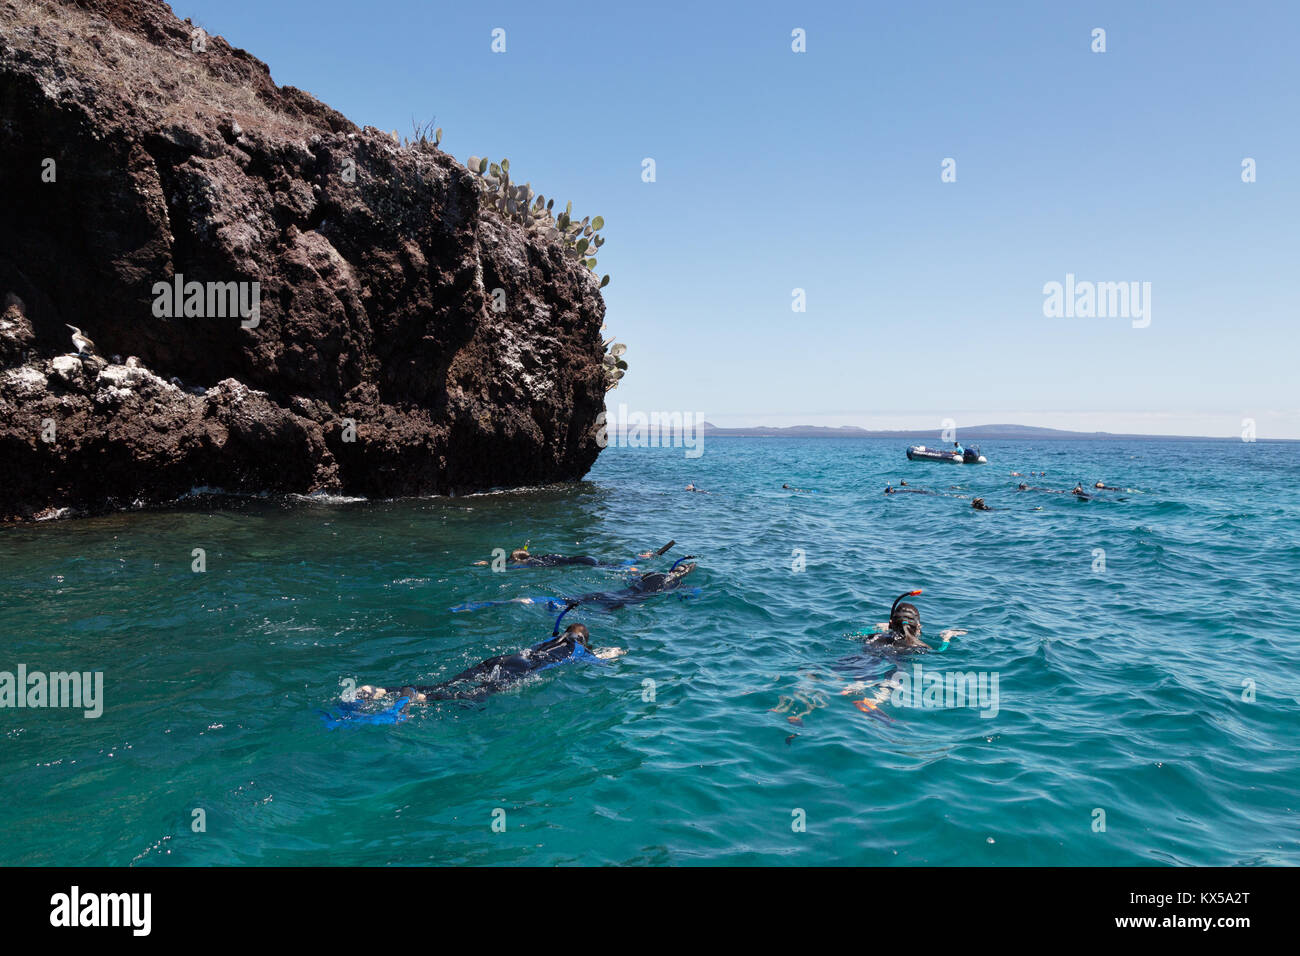 Les touristes en apnée, l'île de Rabida, îles Galapagos Équateur Amérique du Sud Banque D'Images